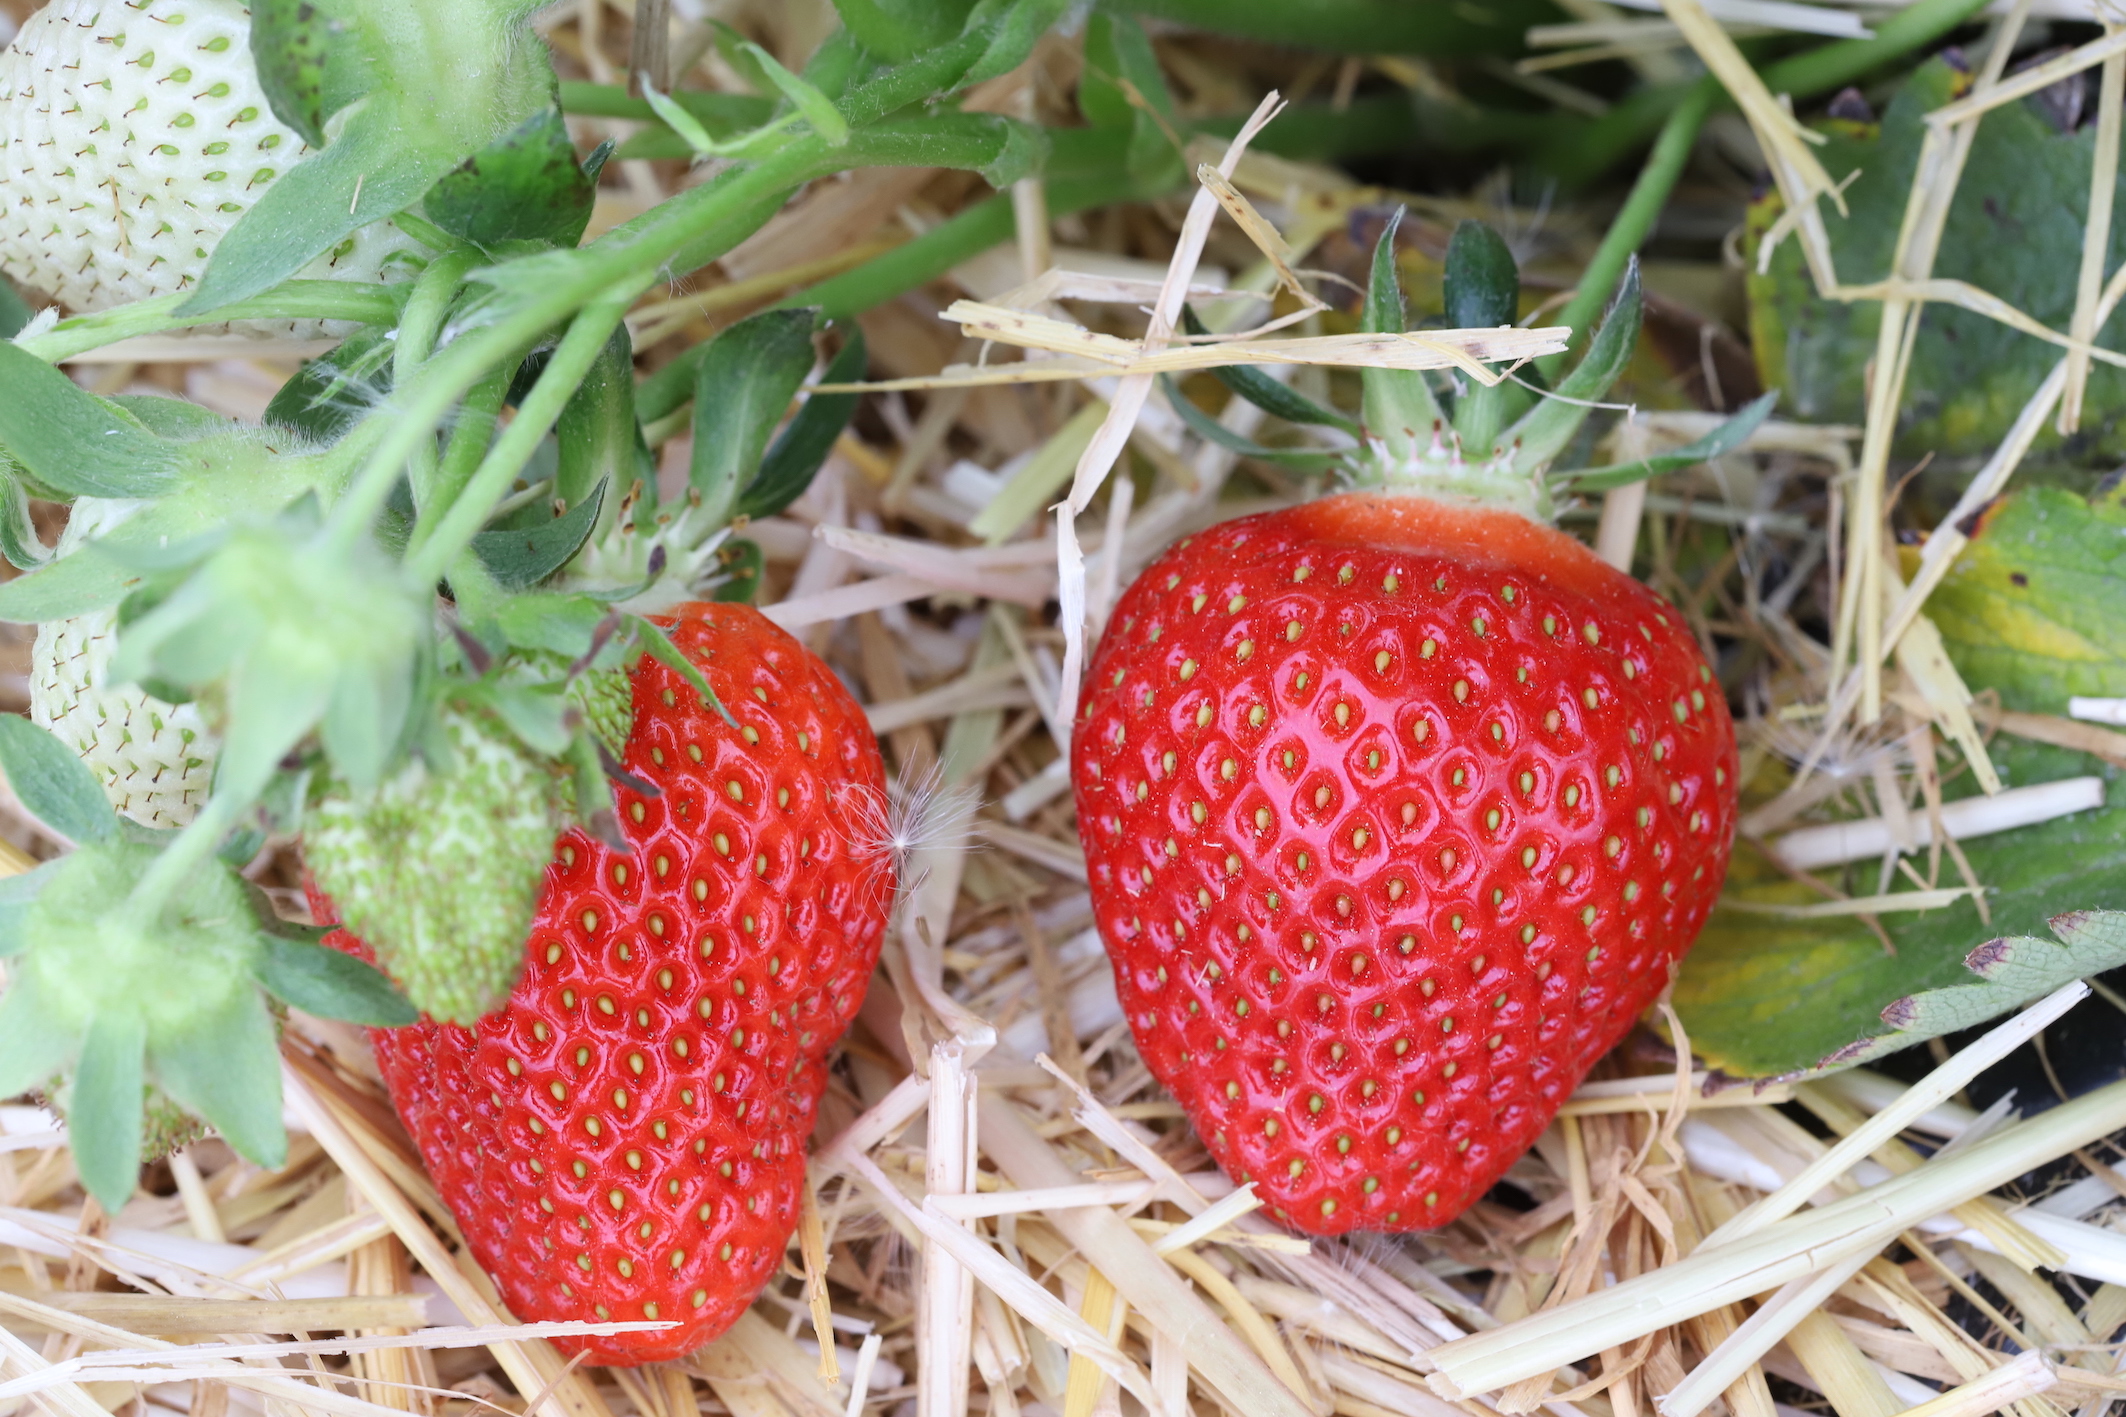 Facteurs de variation de la qualité gustative et nutritionnelle des fraises